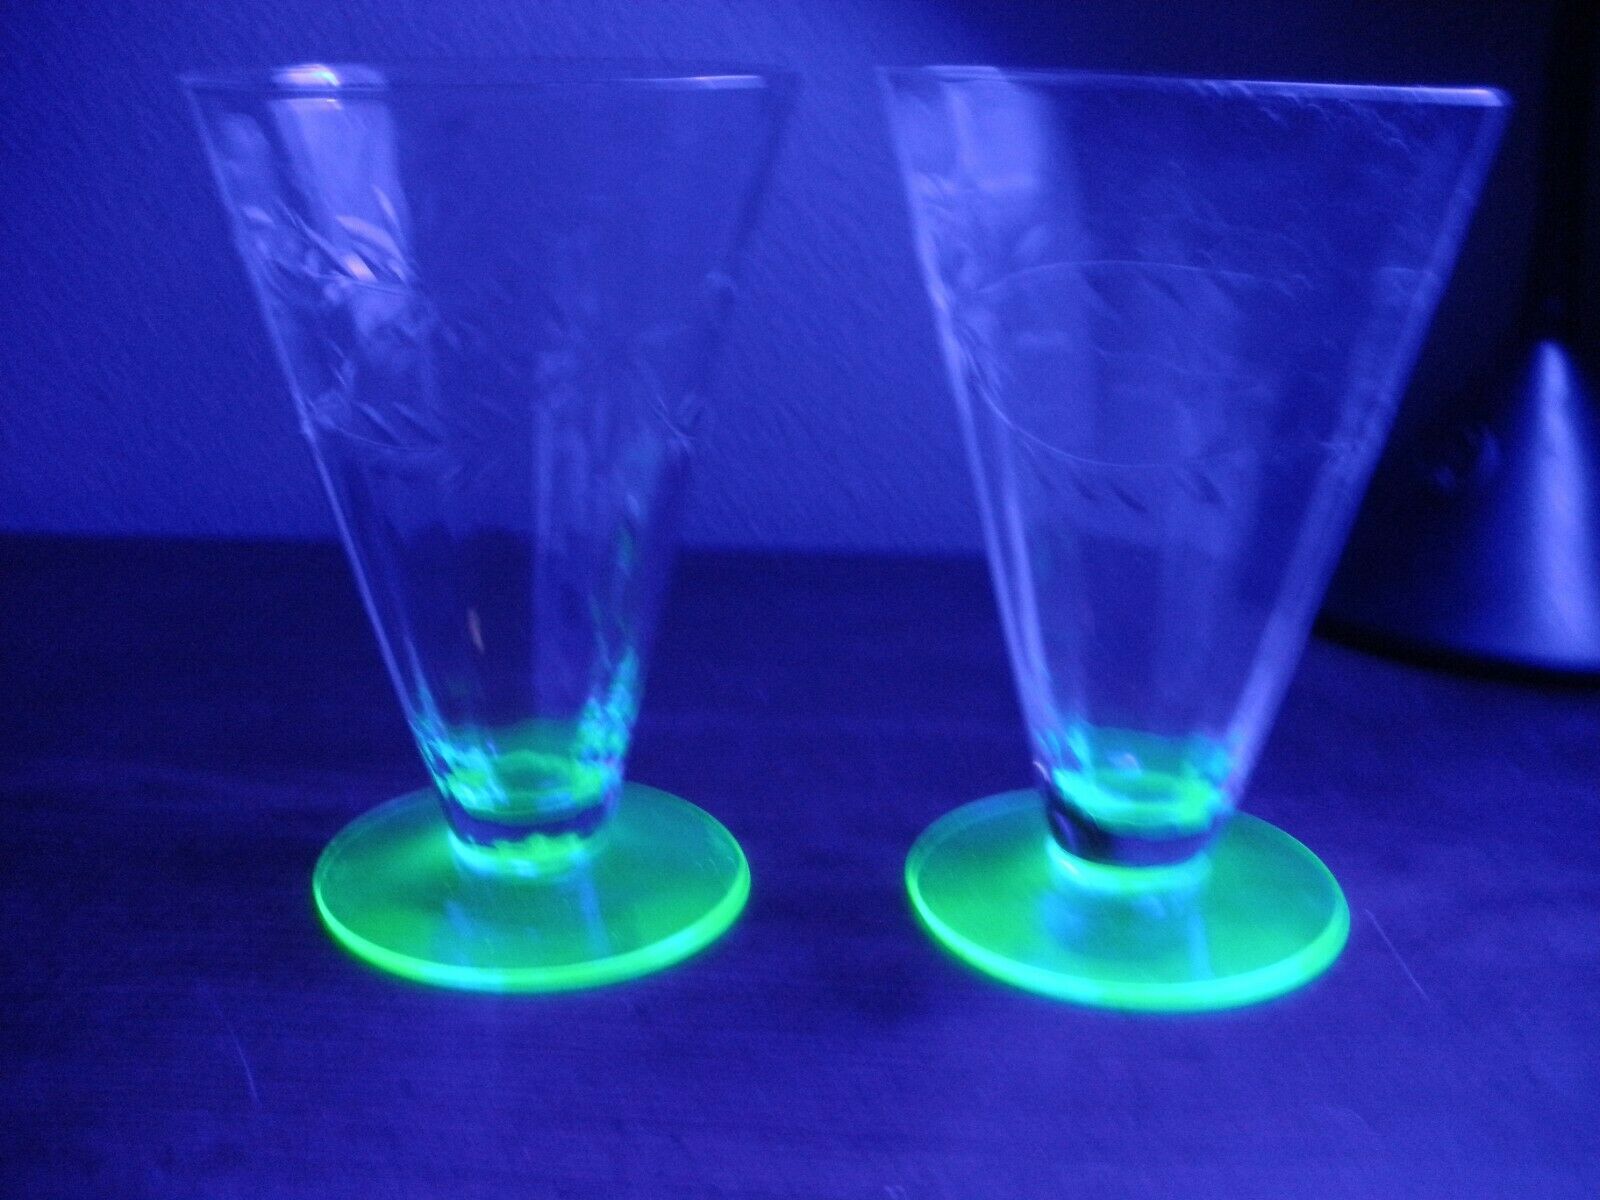 Vintage Uranium Based Etched Flower Design Glasses  5 1/4 ” Tall  3" Wide At Top